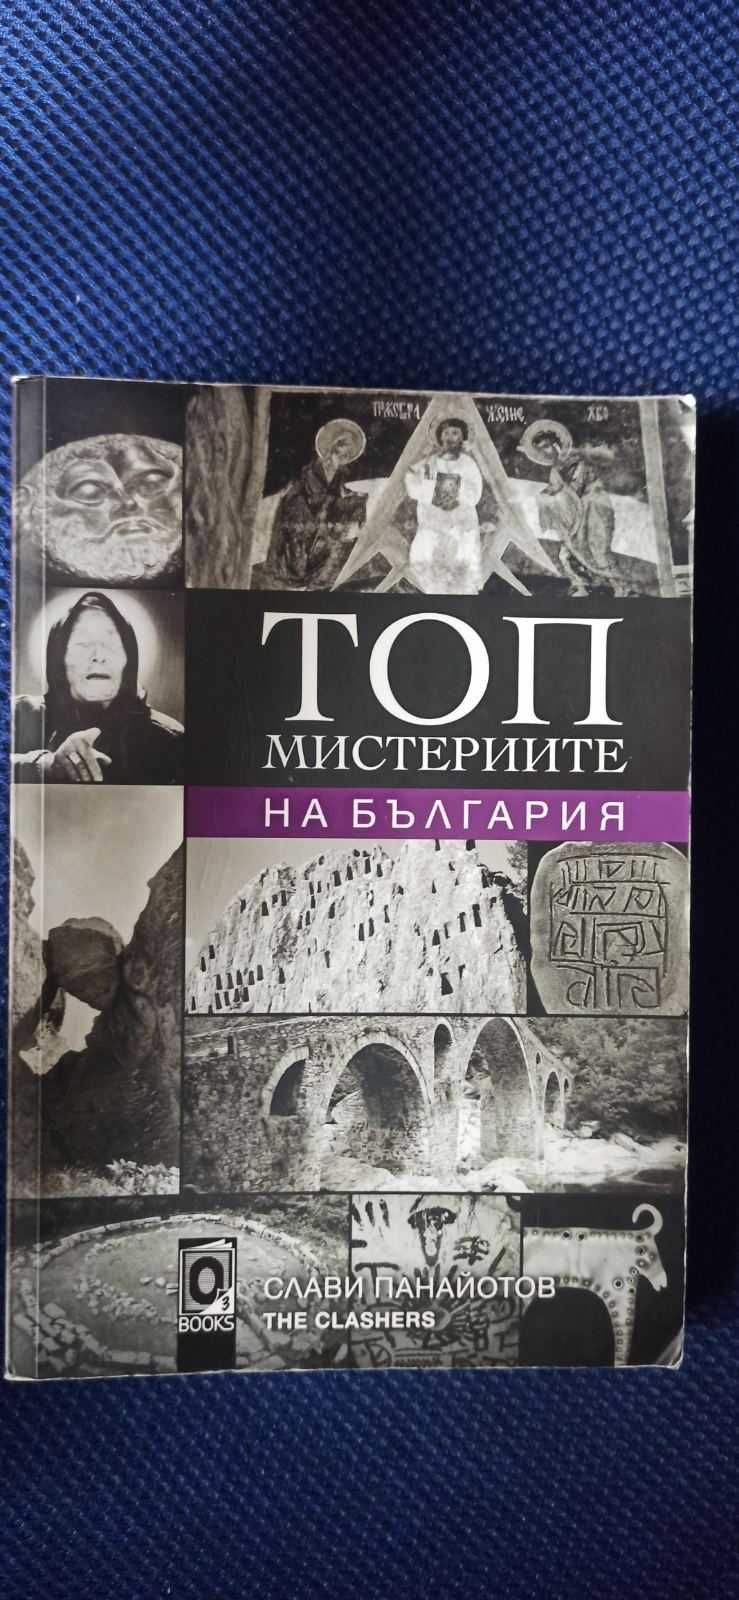 Книги:Чифт;Топ Мистериите на България;Магнус Чейс и боговете на Асгард